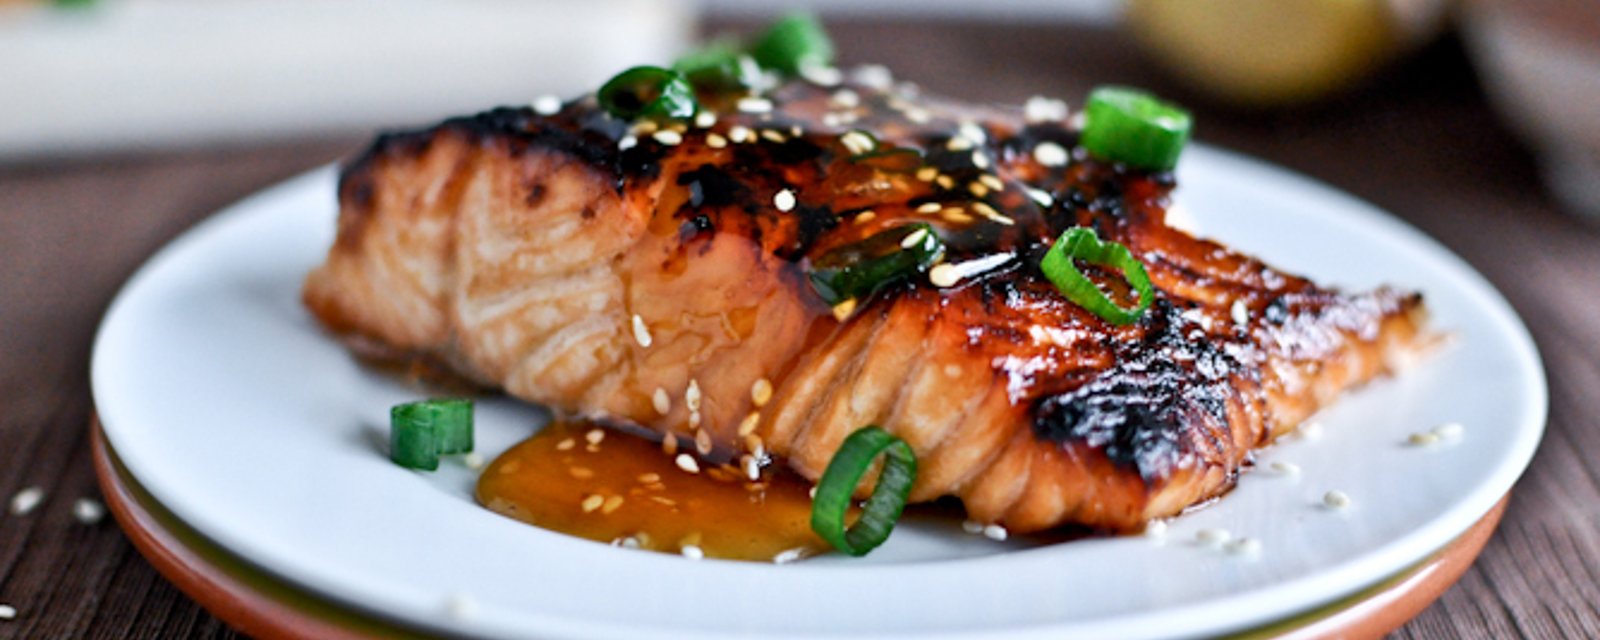 Ce remarquable saumon grillé est d’une simplicité désarmante !